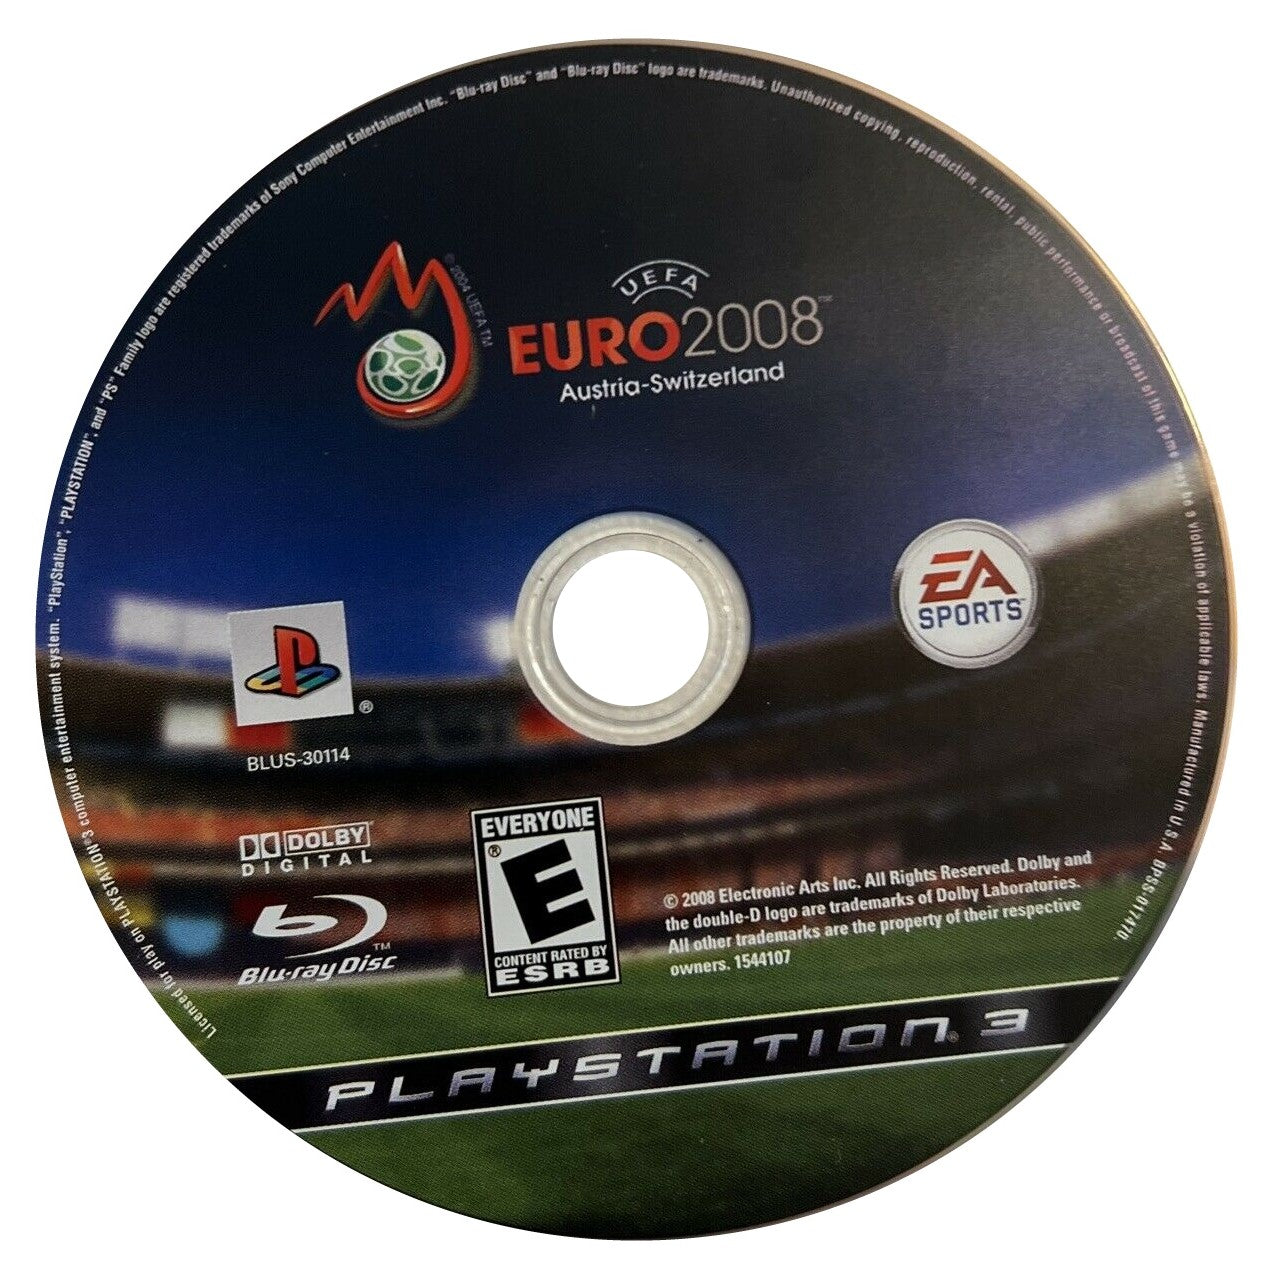 UEFA Euro 2008 - PlayStation 3 (PS3) Game